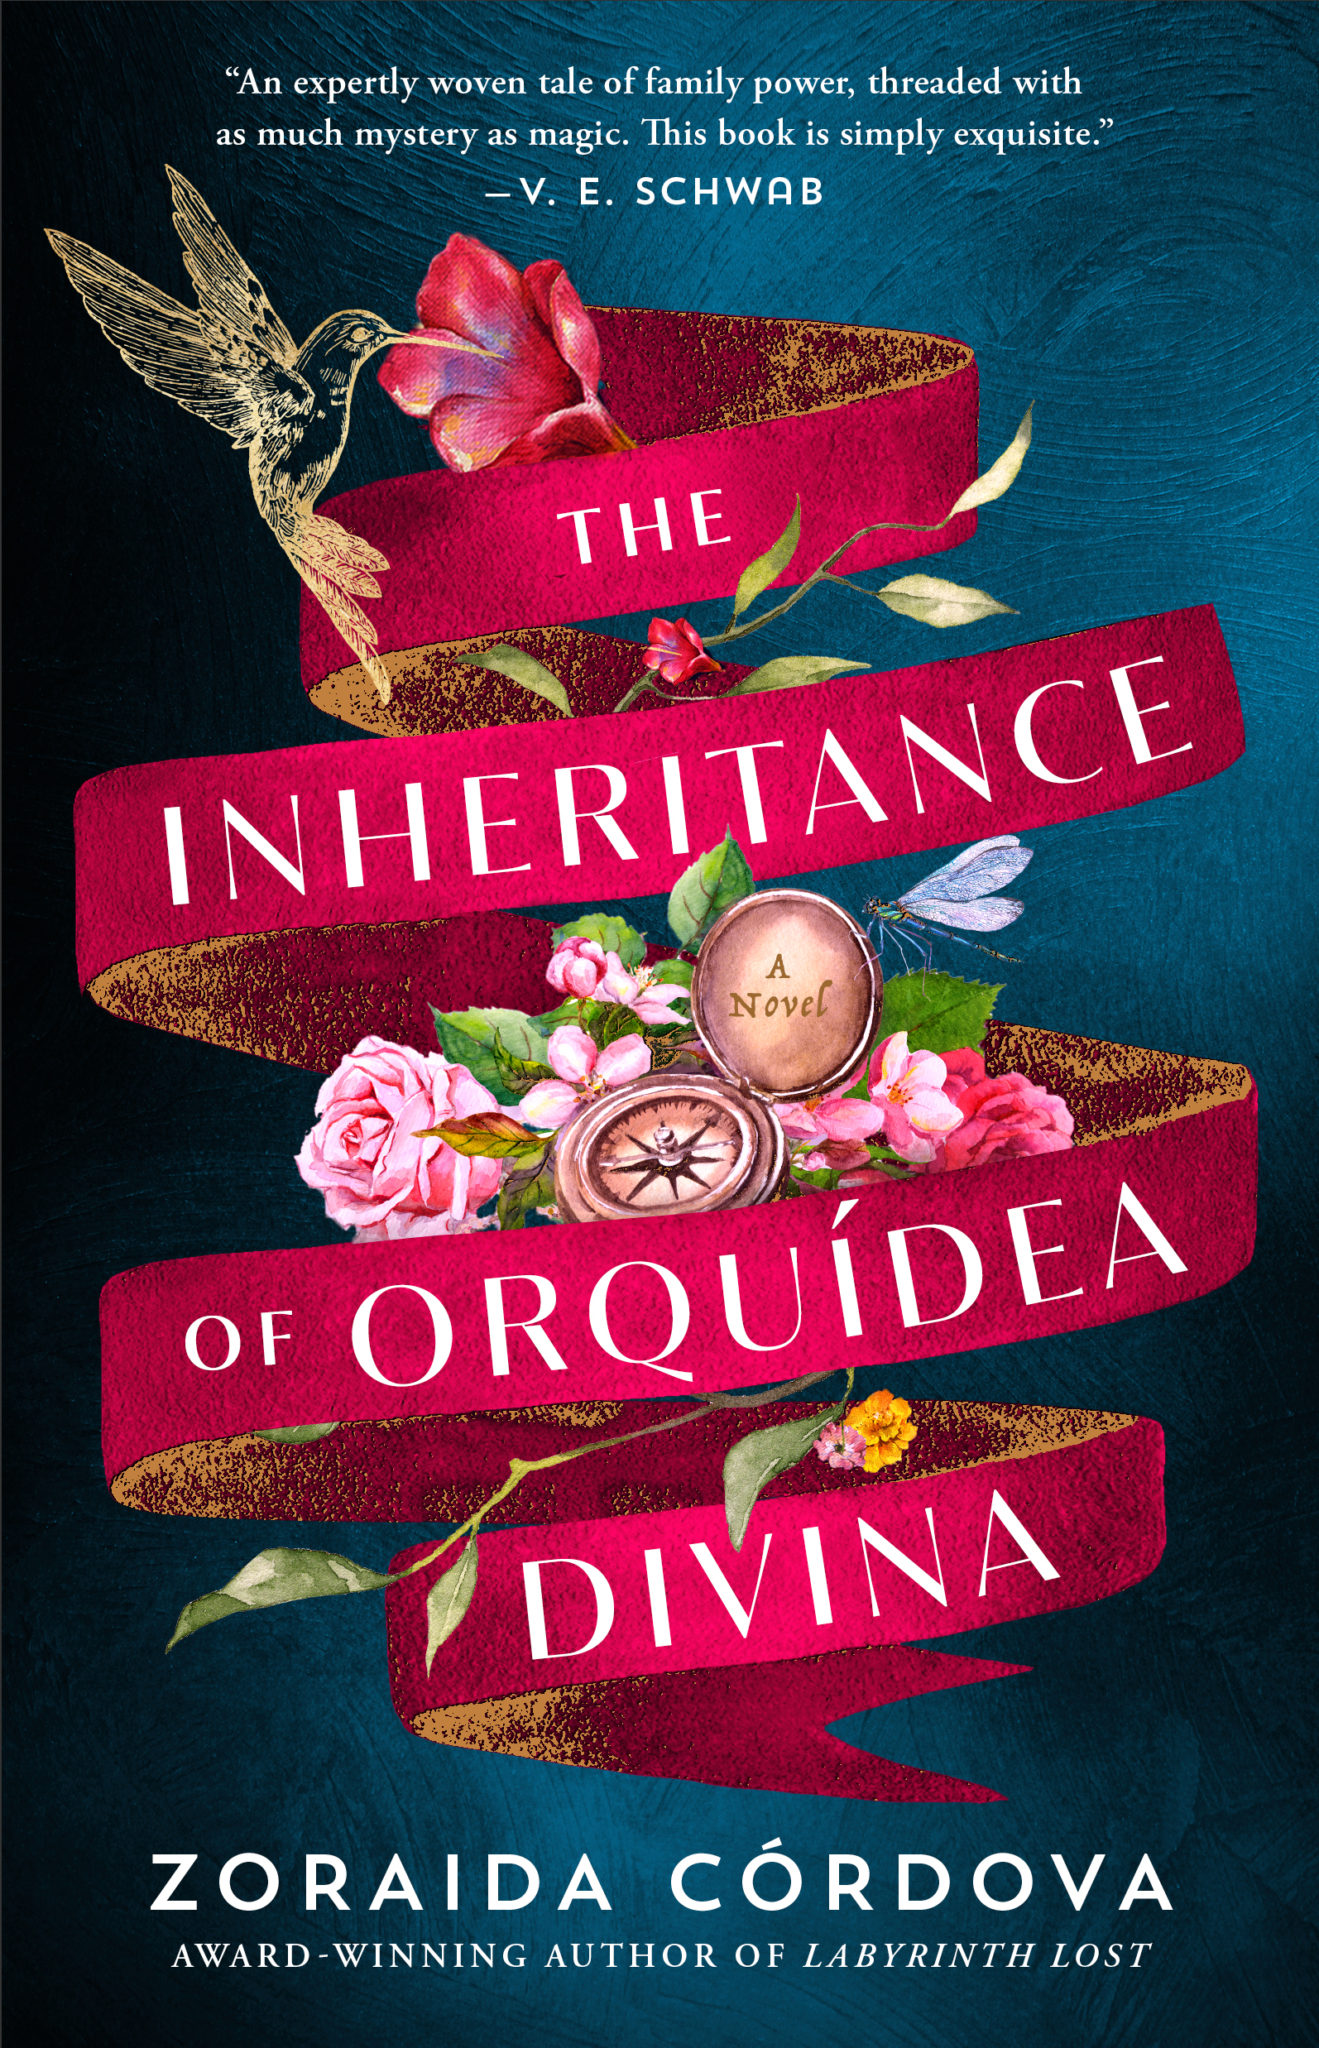 the inheritance of orquidea divina review